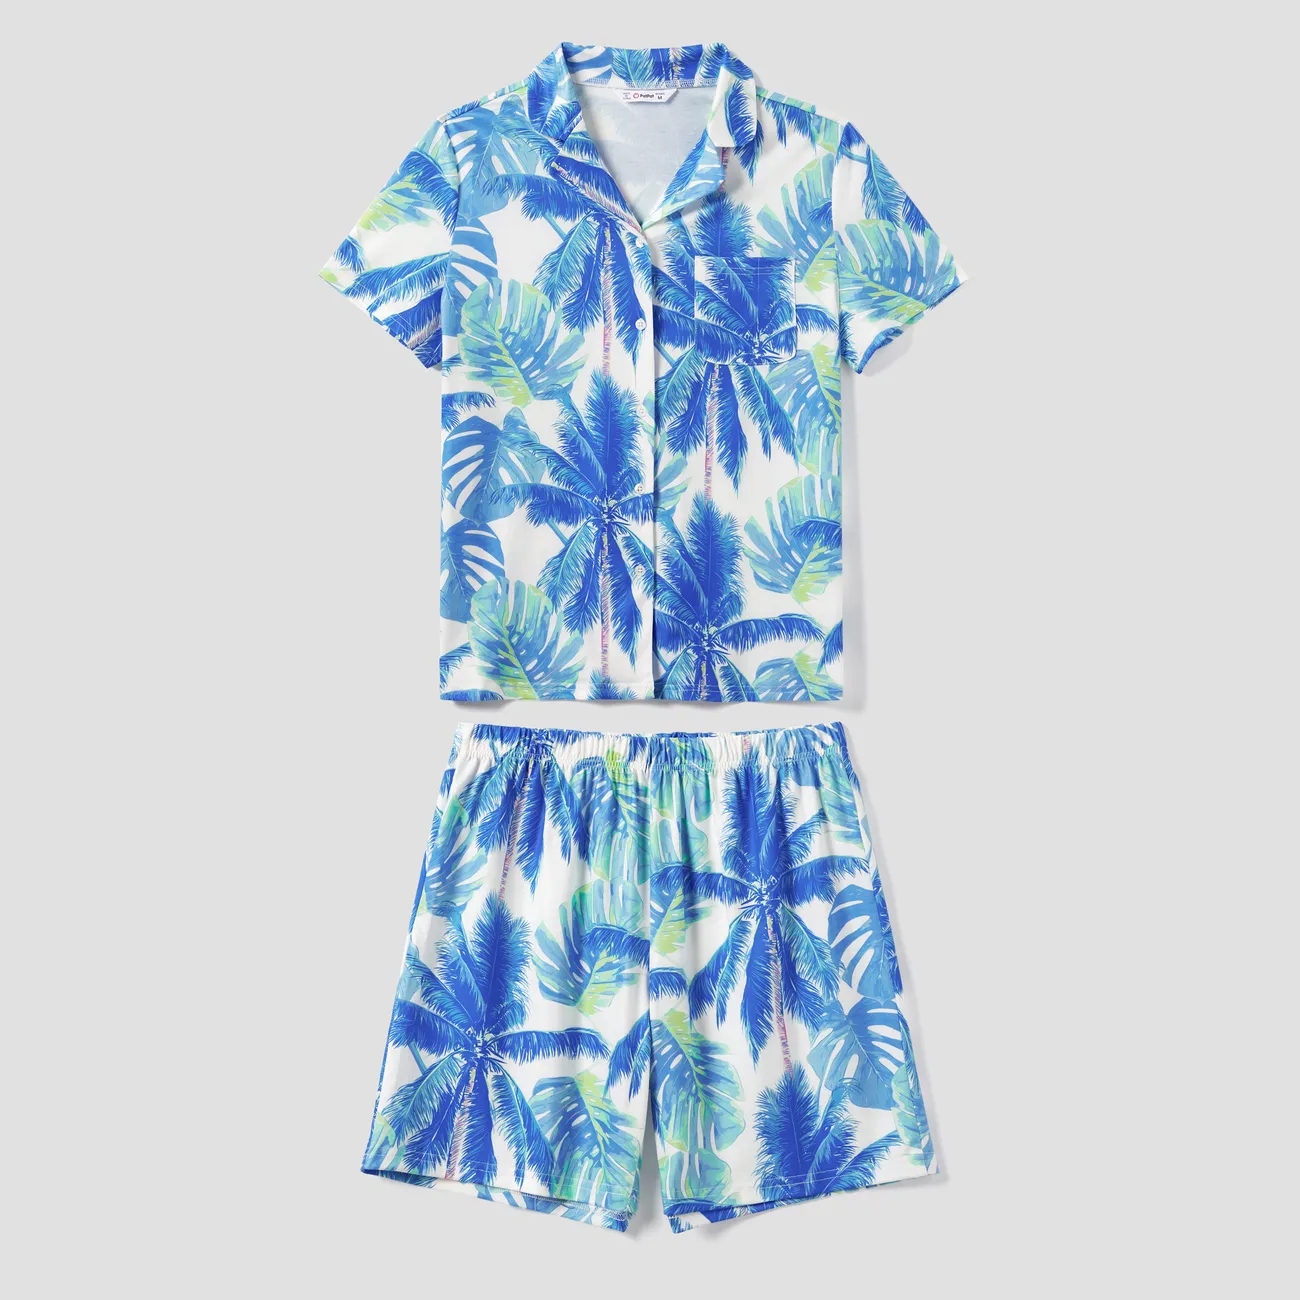 全家裝 熱帶植物花卉 短袖 親子裝 睡衣 (Flame Resistant) 藍白色 big image 1